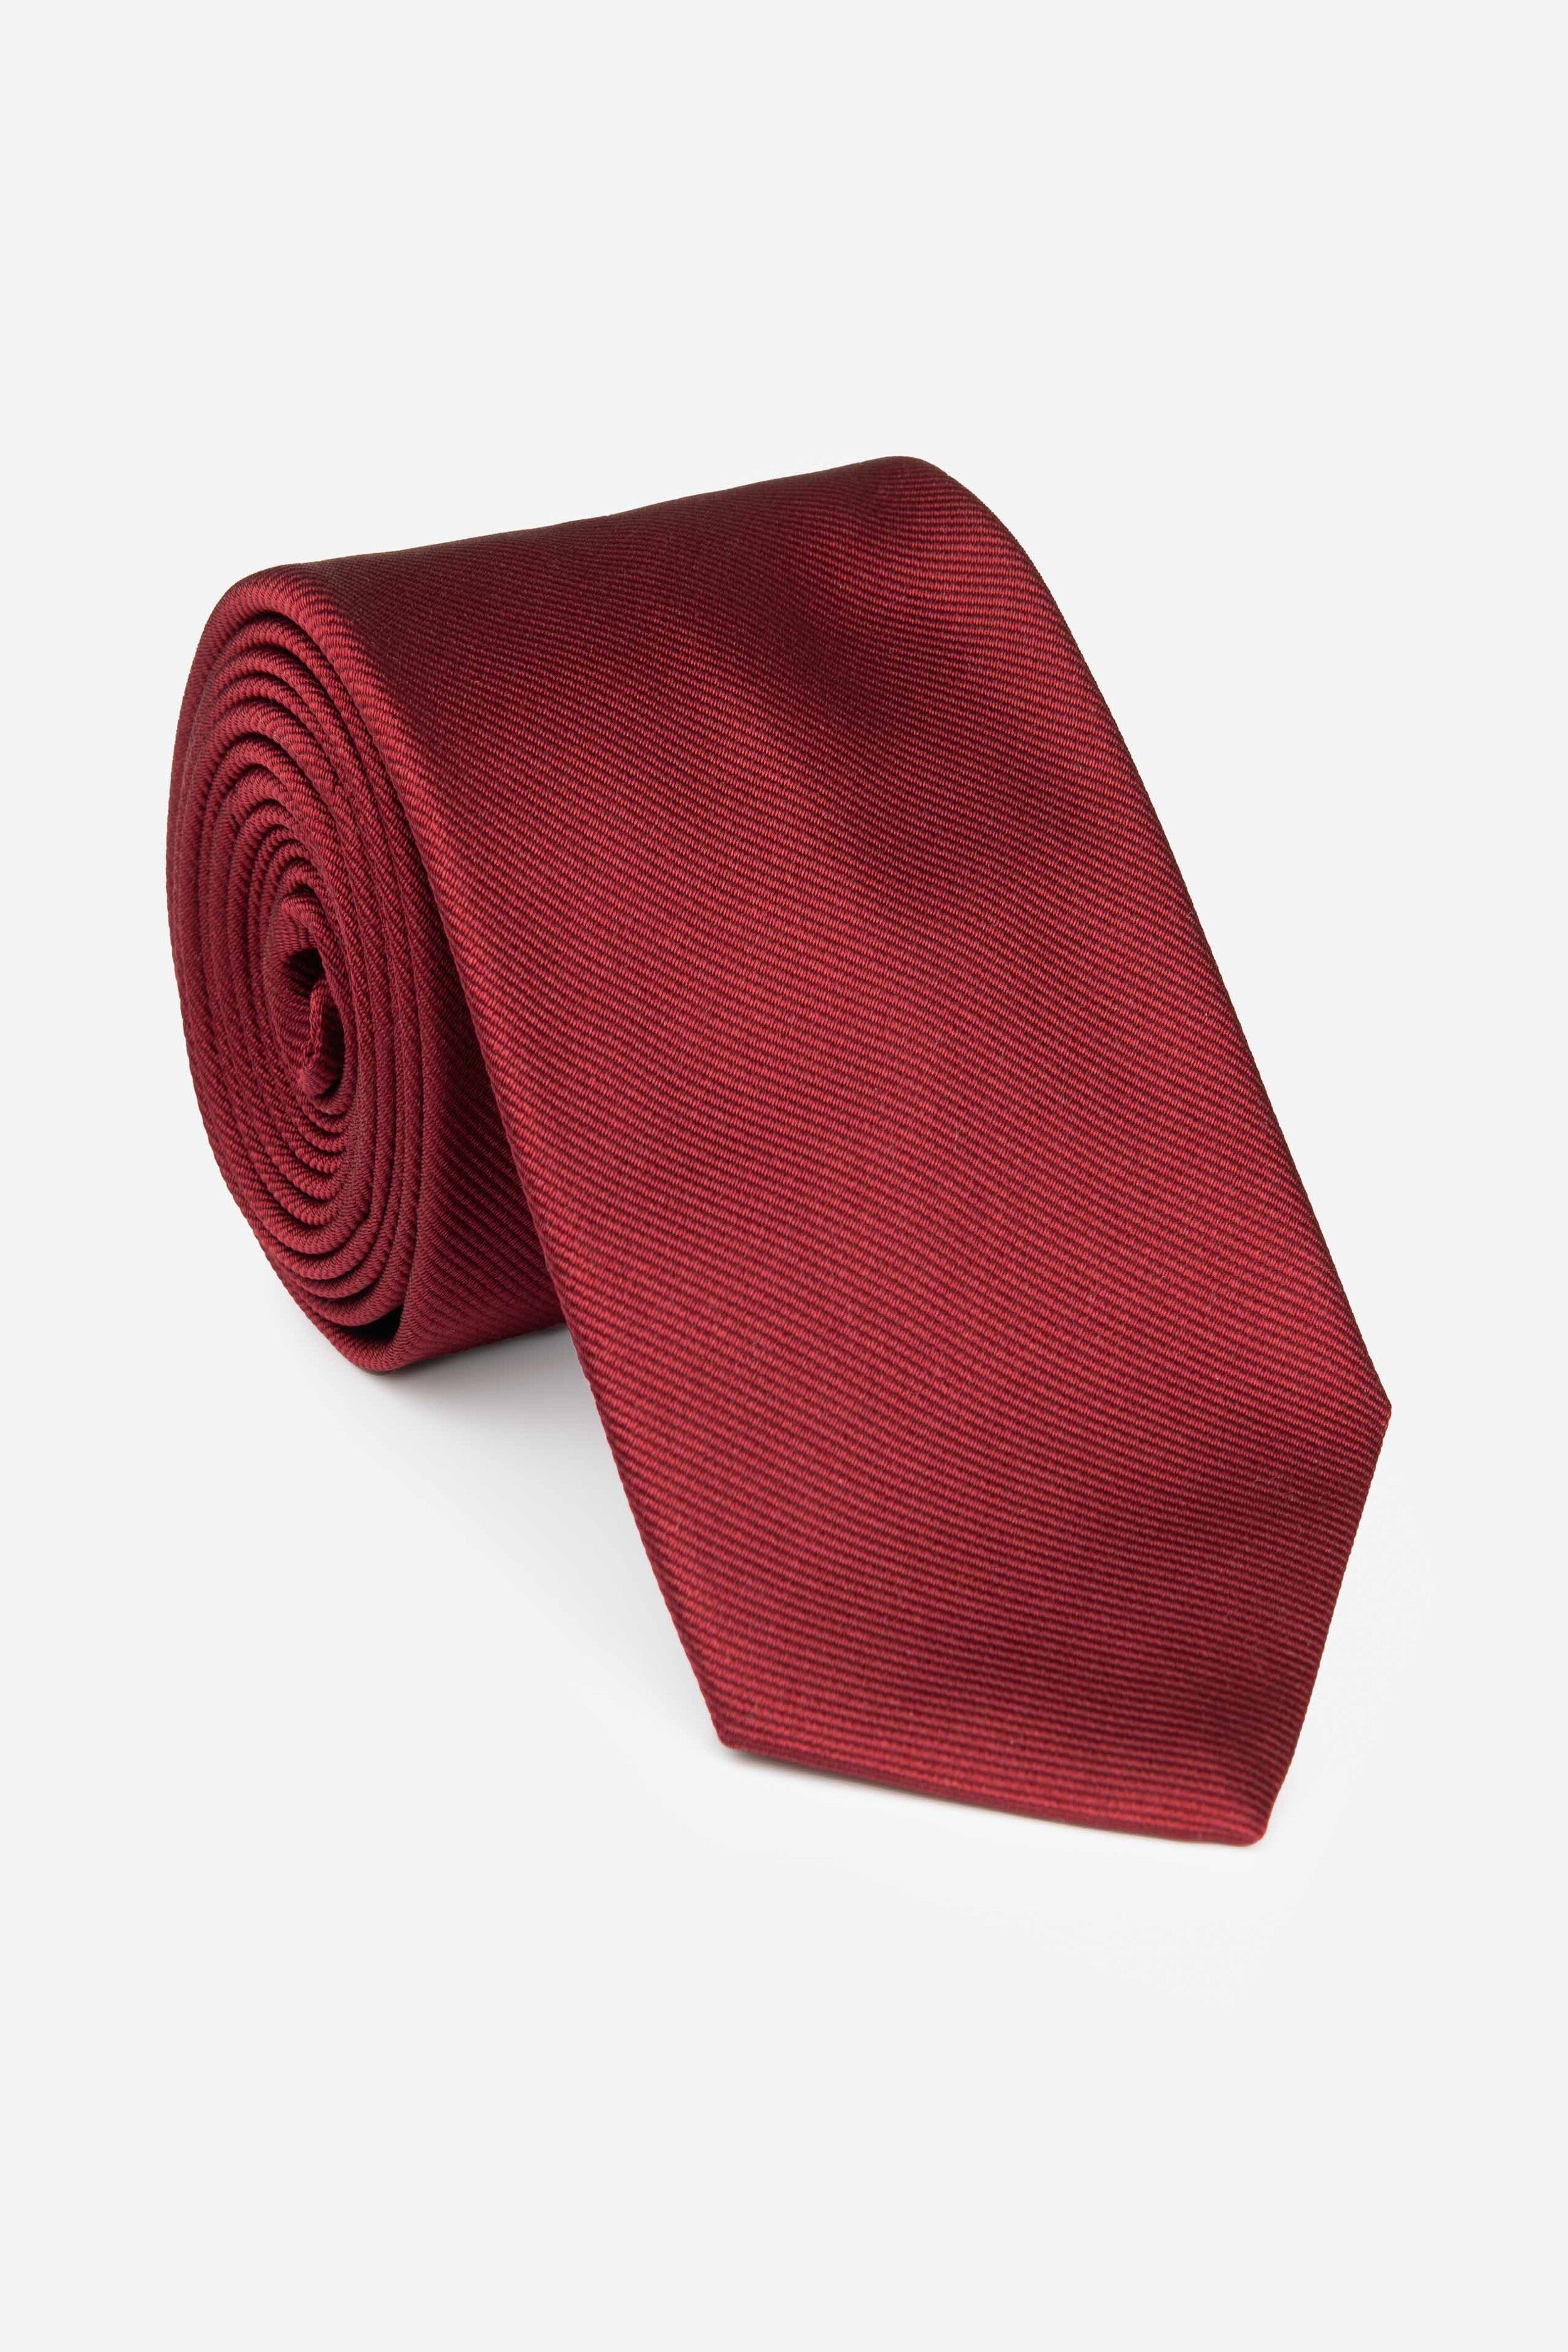 Cravatta in seta ottoman - ROSSO